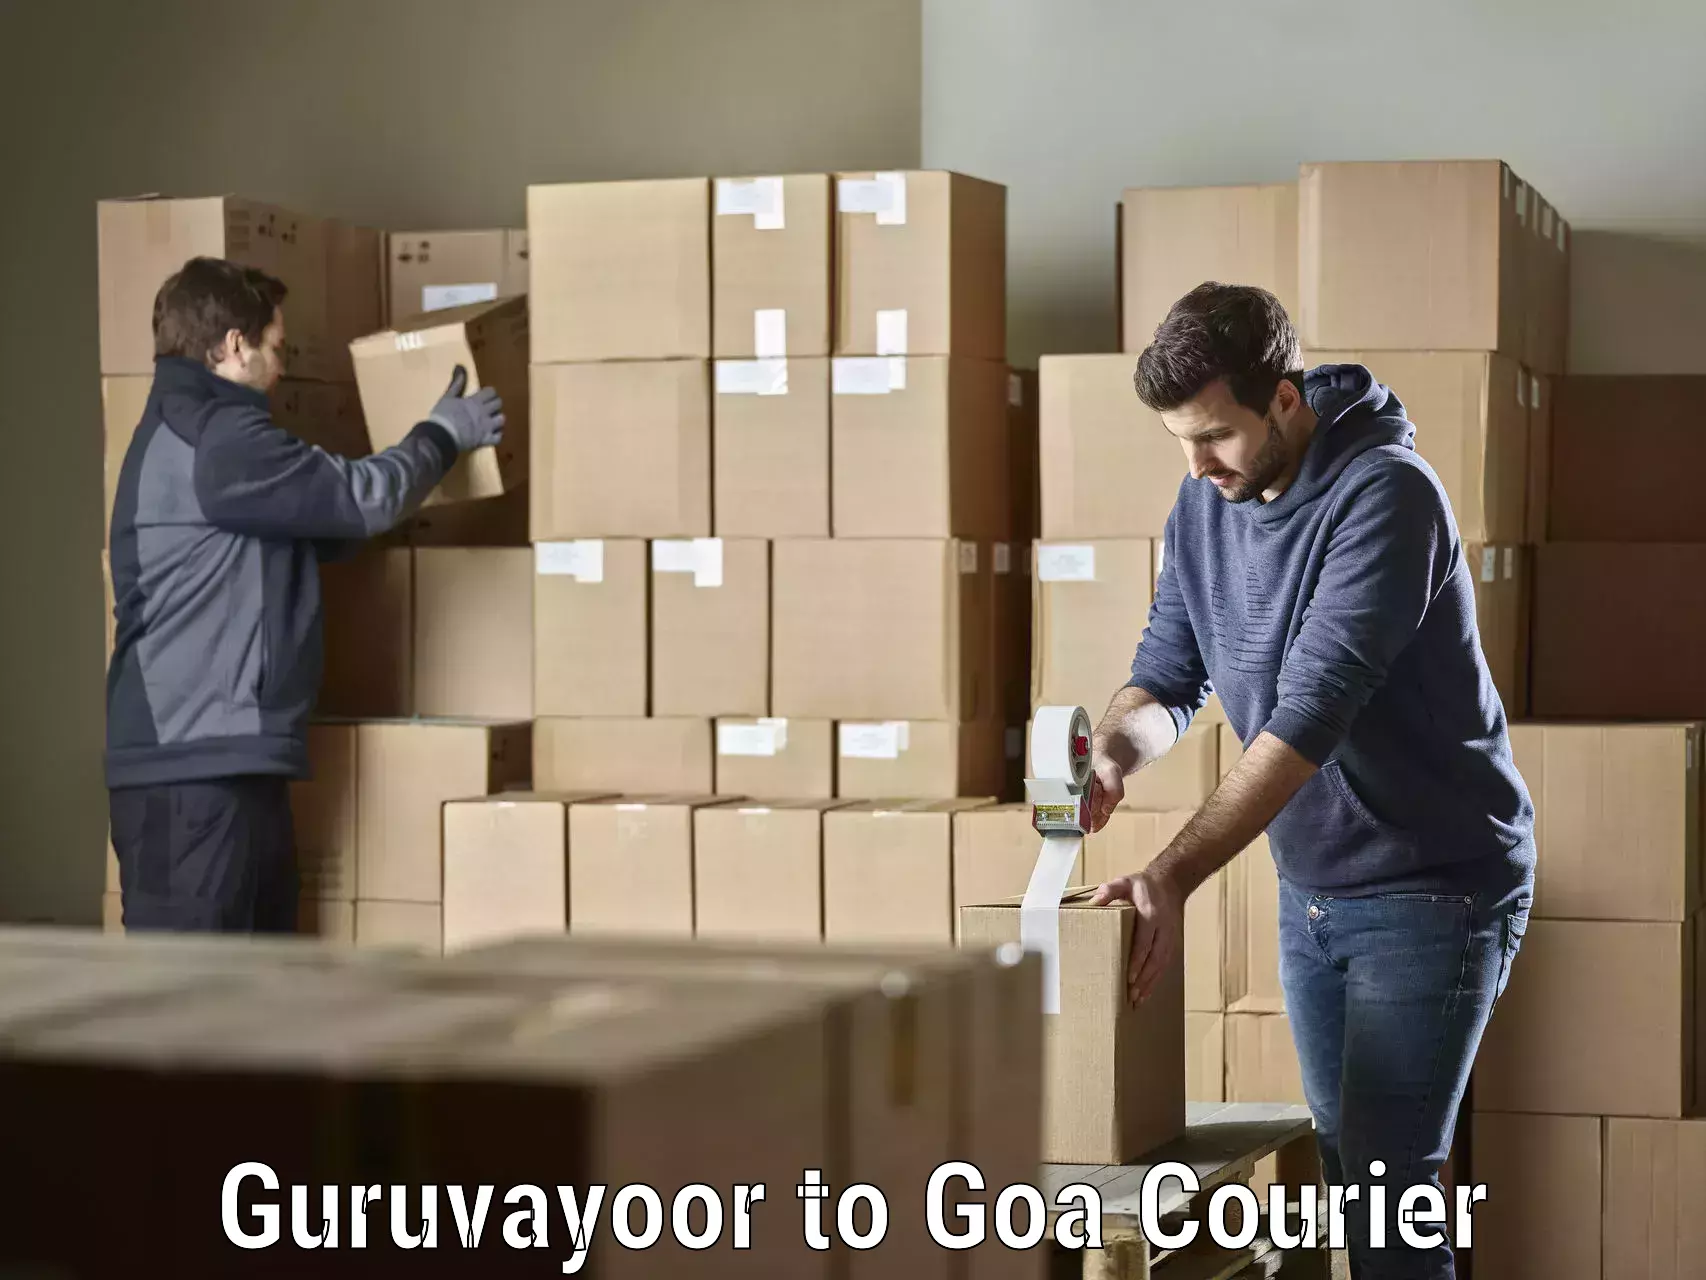 Efficient parcel service Guruvayoor to IIT Goa